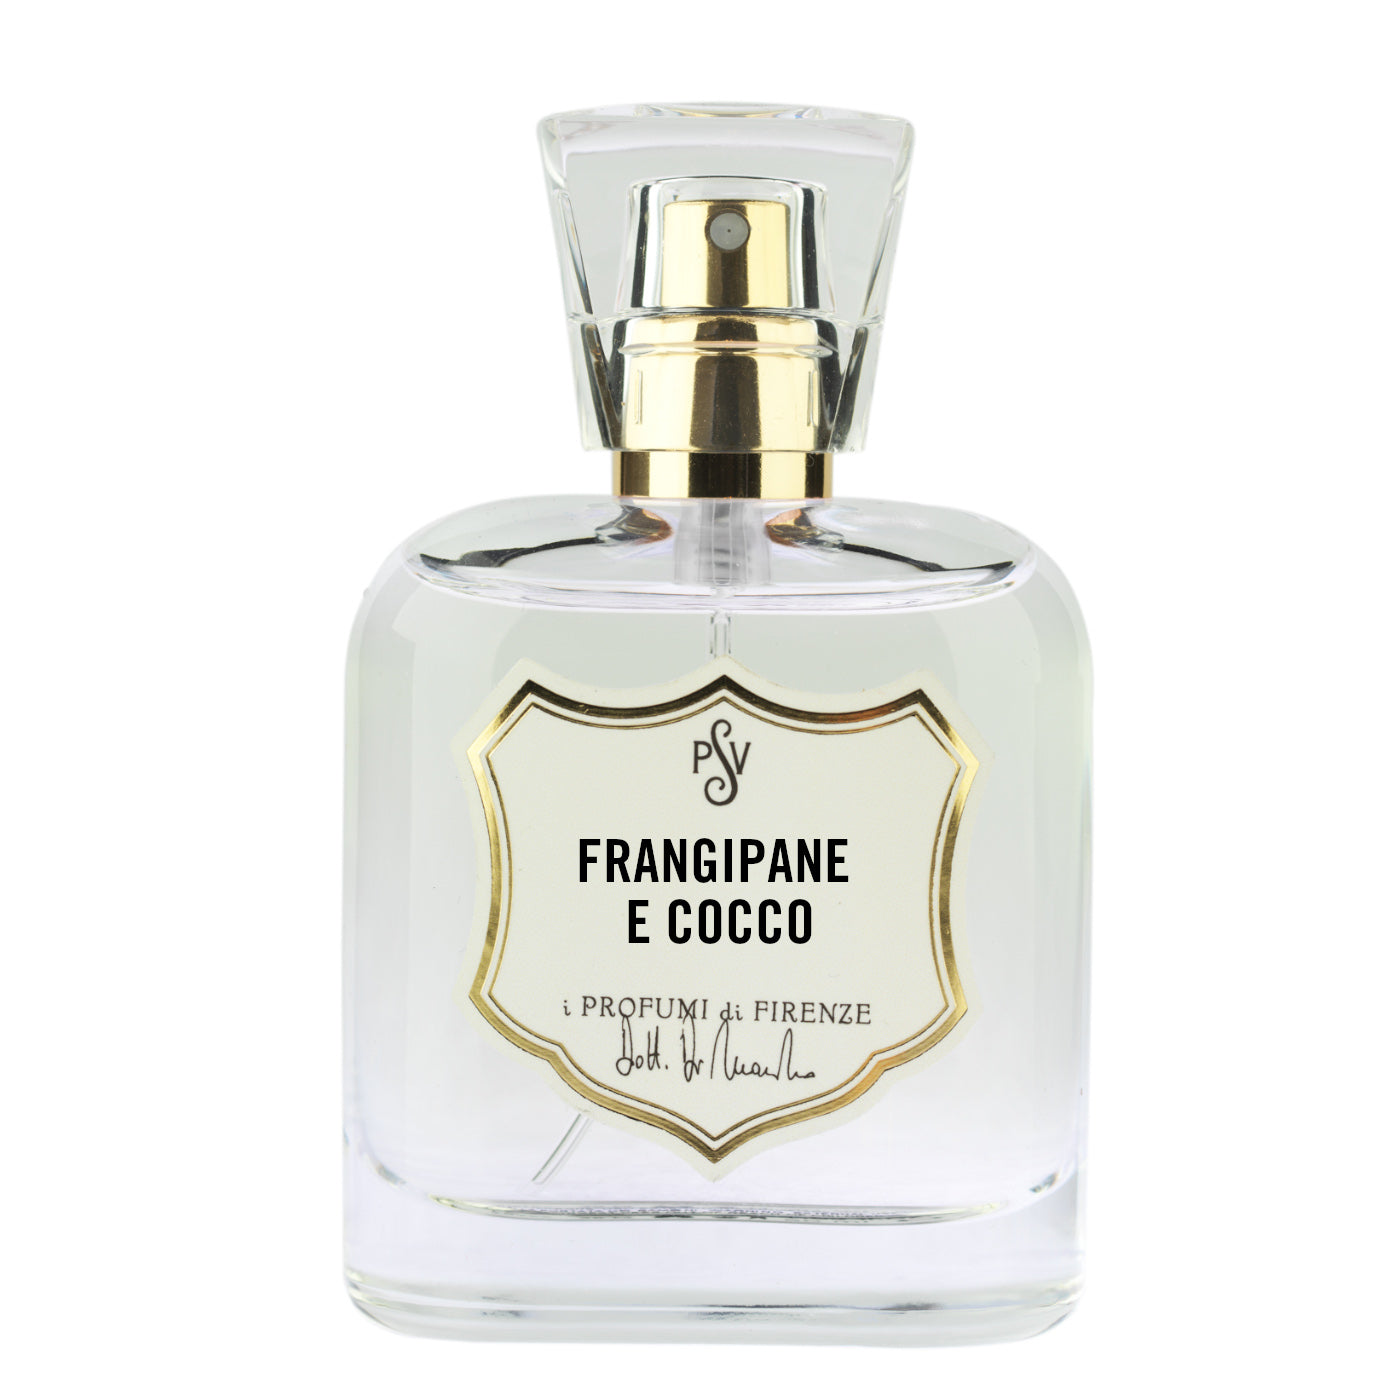 Muschio Bianco 3 I Profumi di Firenze perfume - a fragrance for women and  men